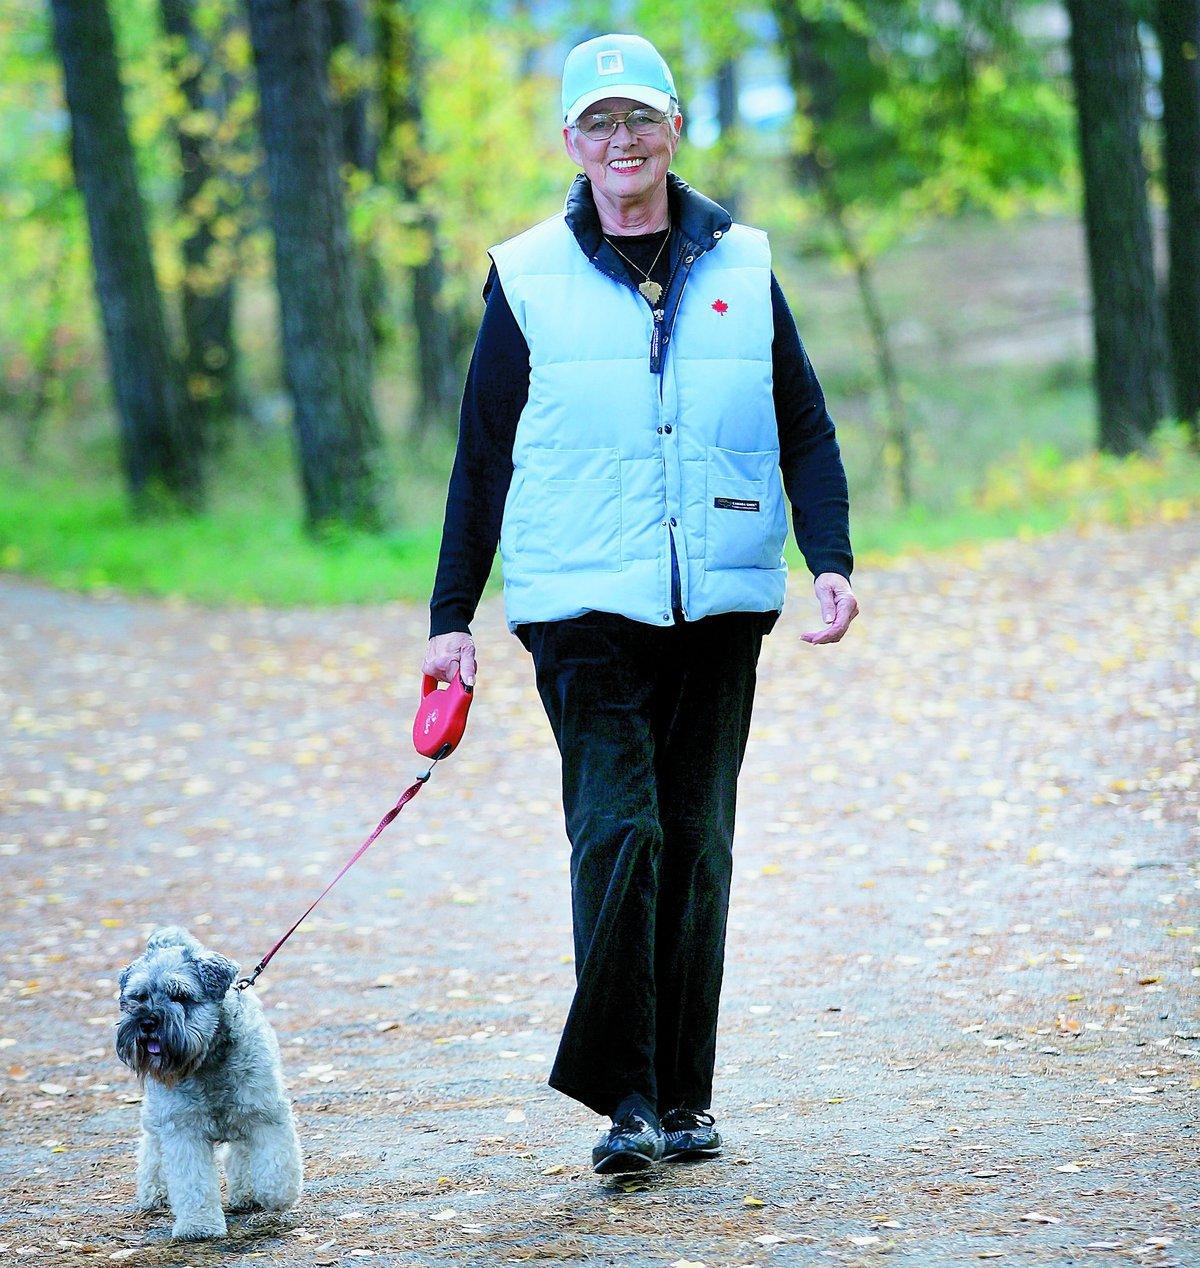 Tack vare att hon fick recept på motion blev Elsa motiverad att börja promenera. Som sällskap har hon gärna grannens hund.